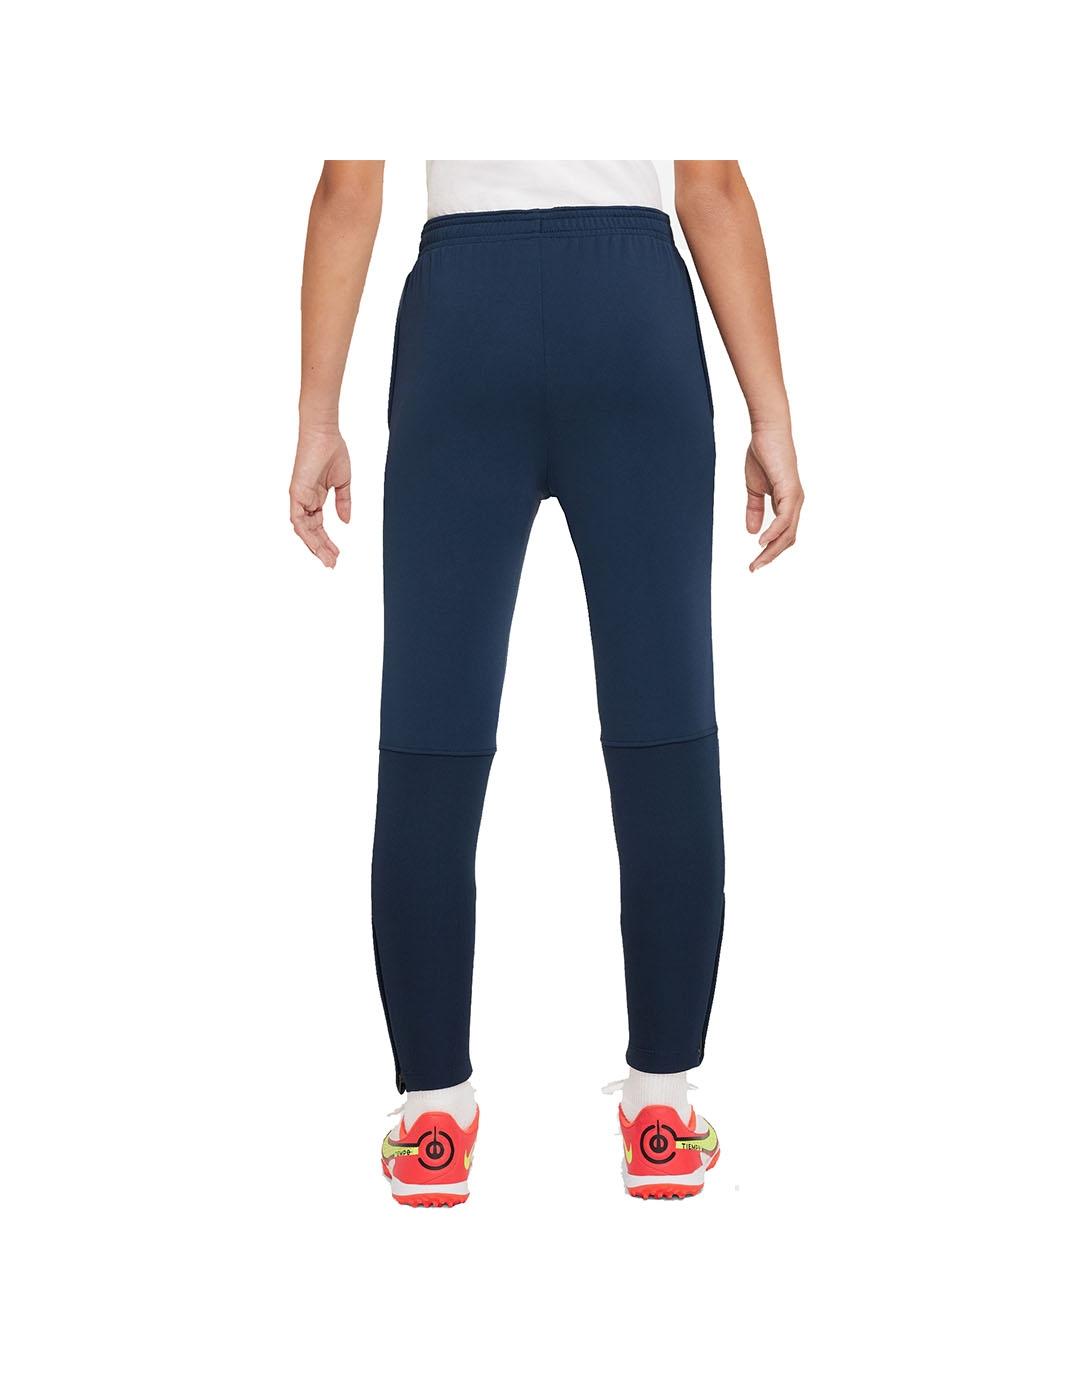 Pantalon Niño Nike Acd Azul Marino